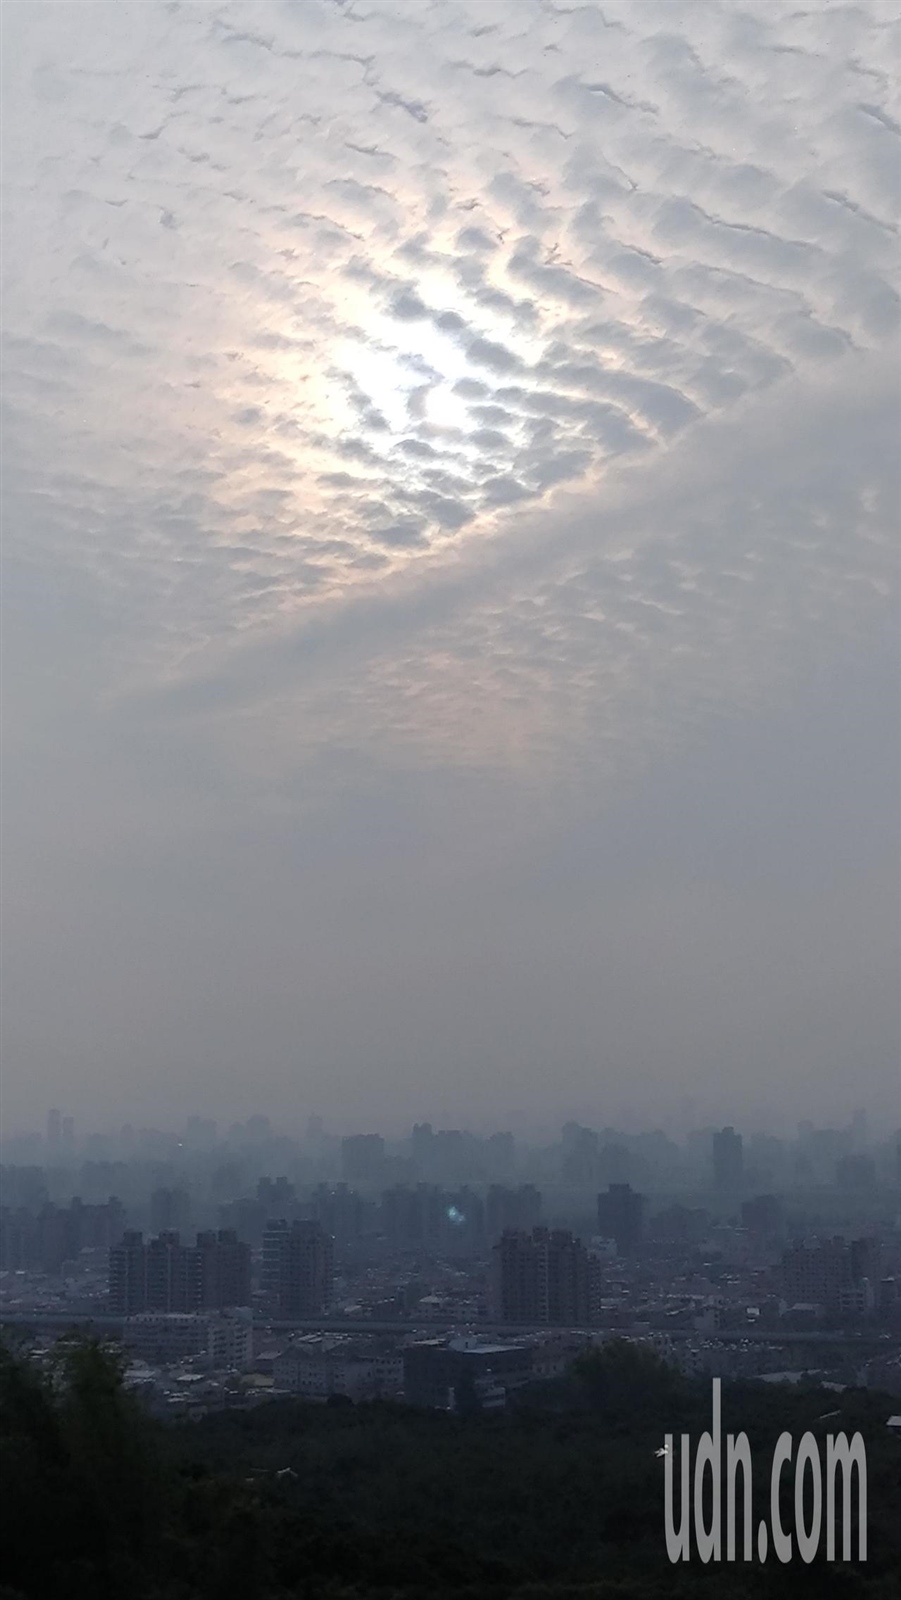 從台中市大坑九號步道遠眺台中市區，可以看見都市籠罩在一片霧茫茫中，但究竟是霧還是霾？應該看一下空汙指數才能確定。記者黃寅／攝影